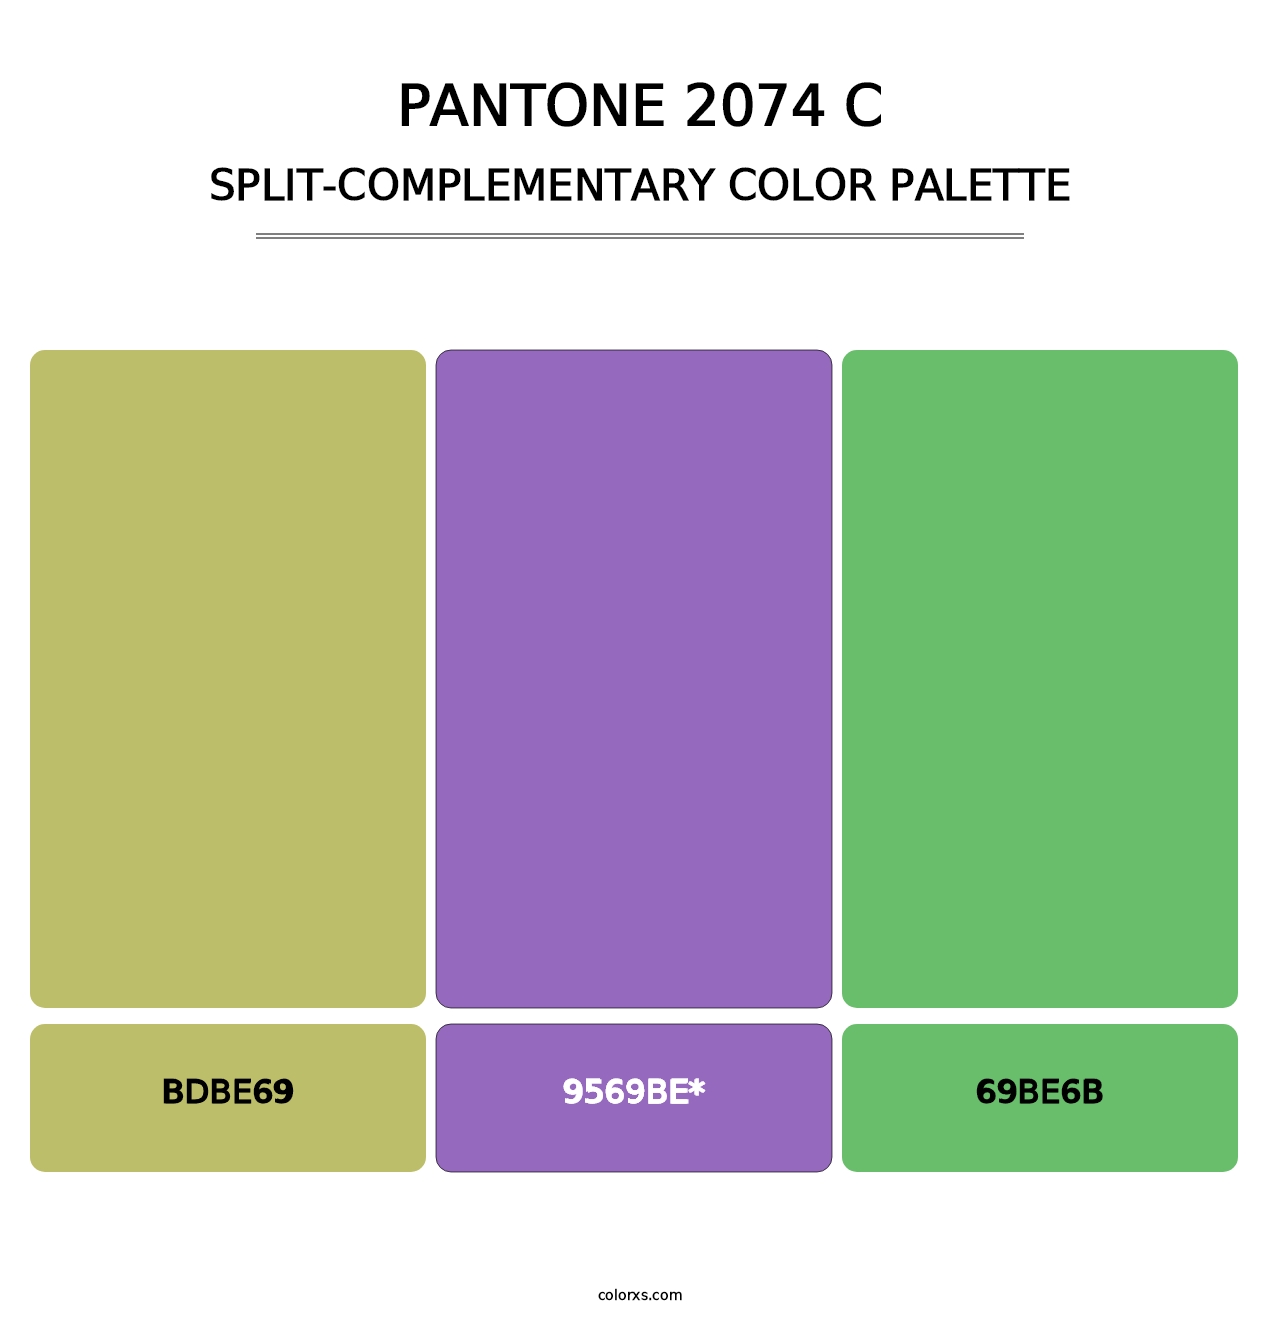 PANTONE 2074 C - Split-Complementary Color Palette